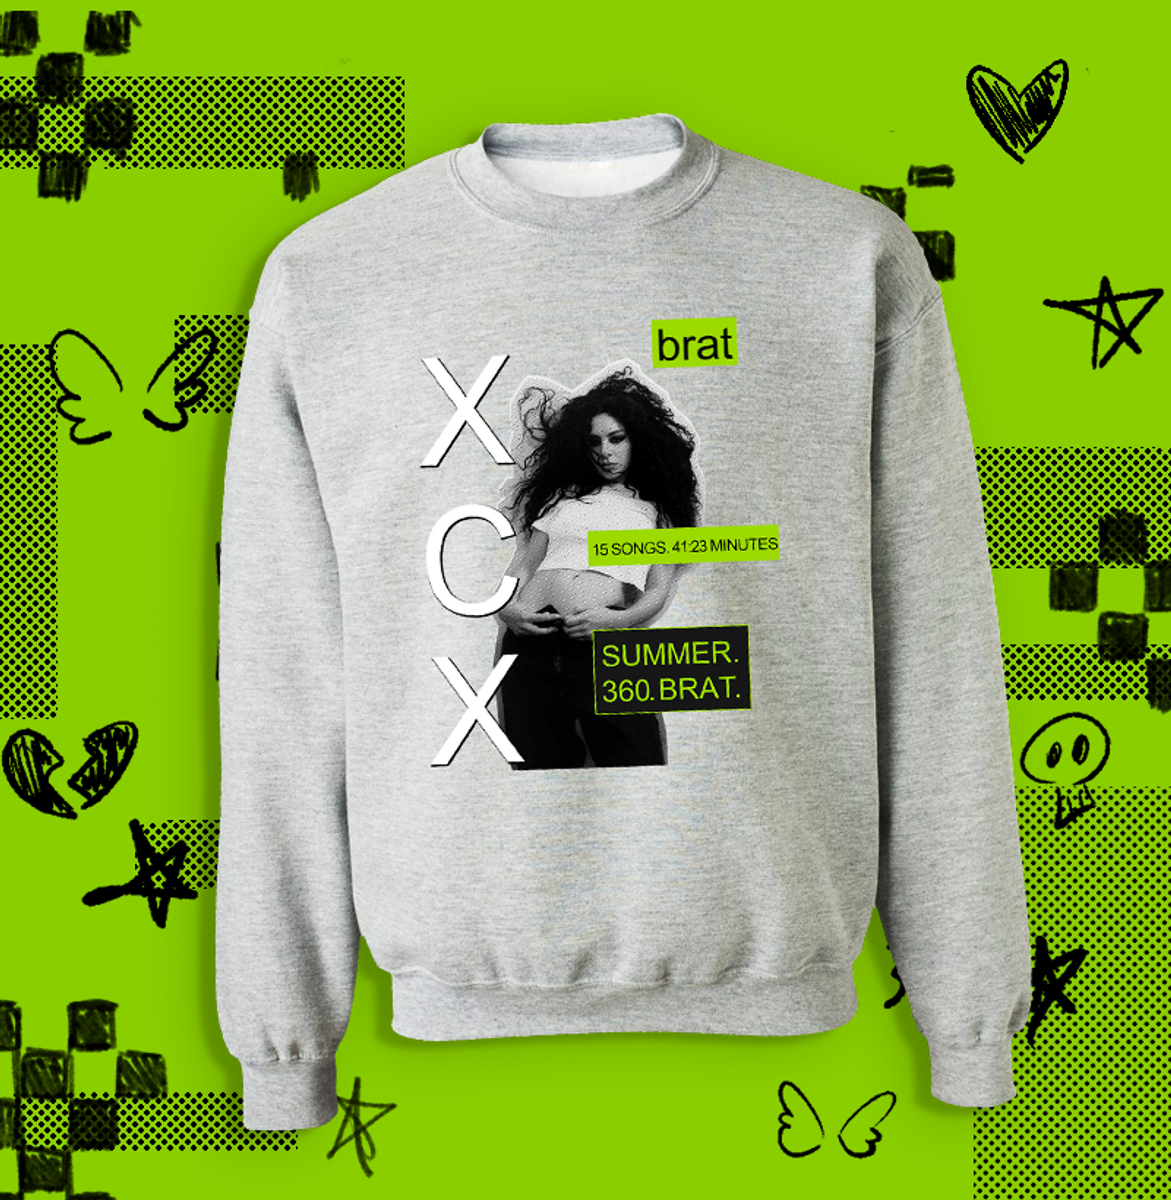 Nome do produto: Moletom Charli XCX - brat album